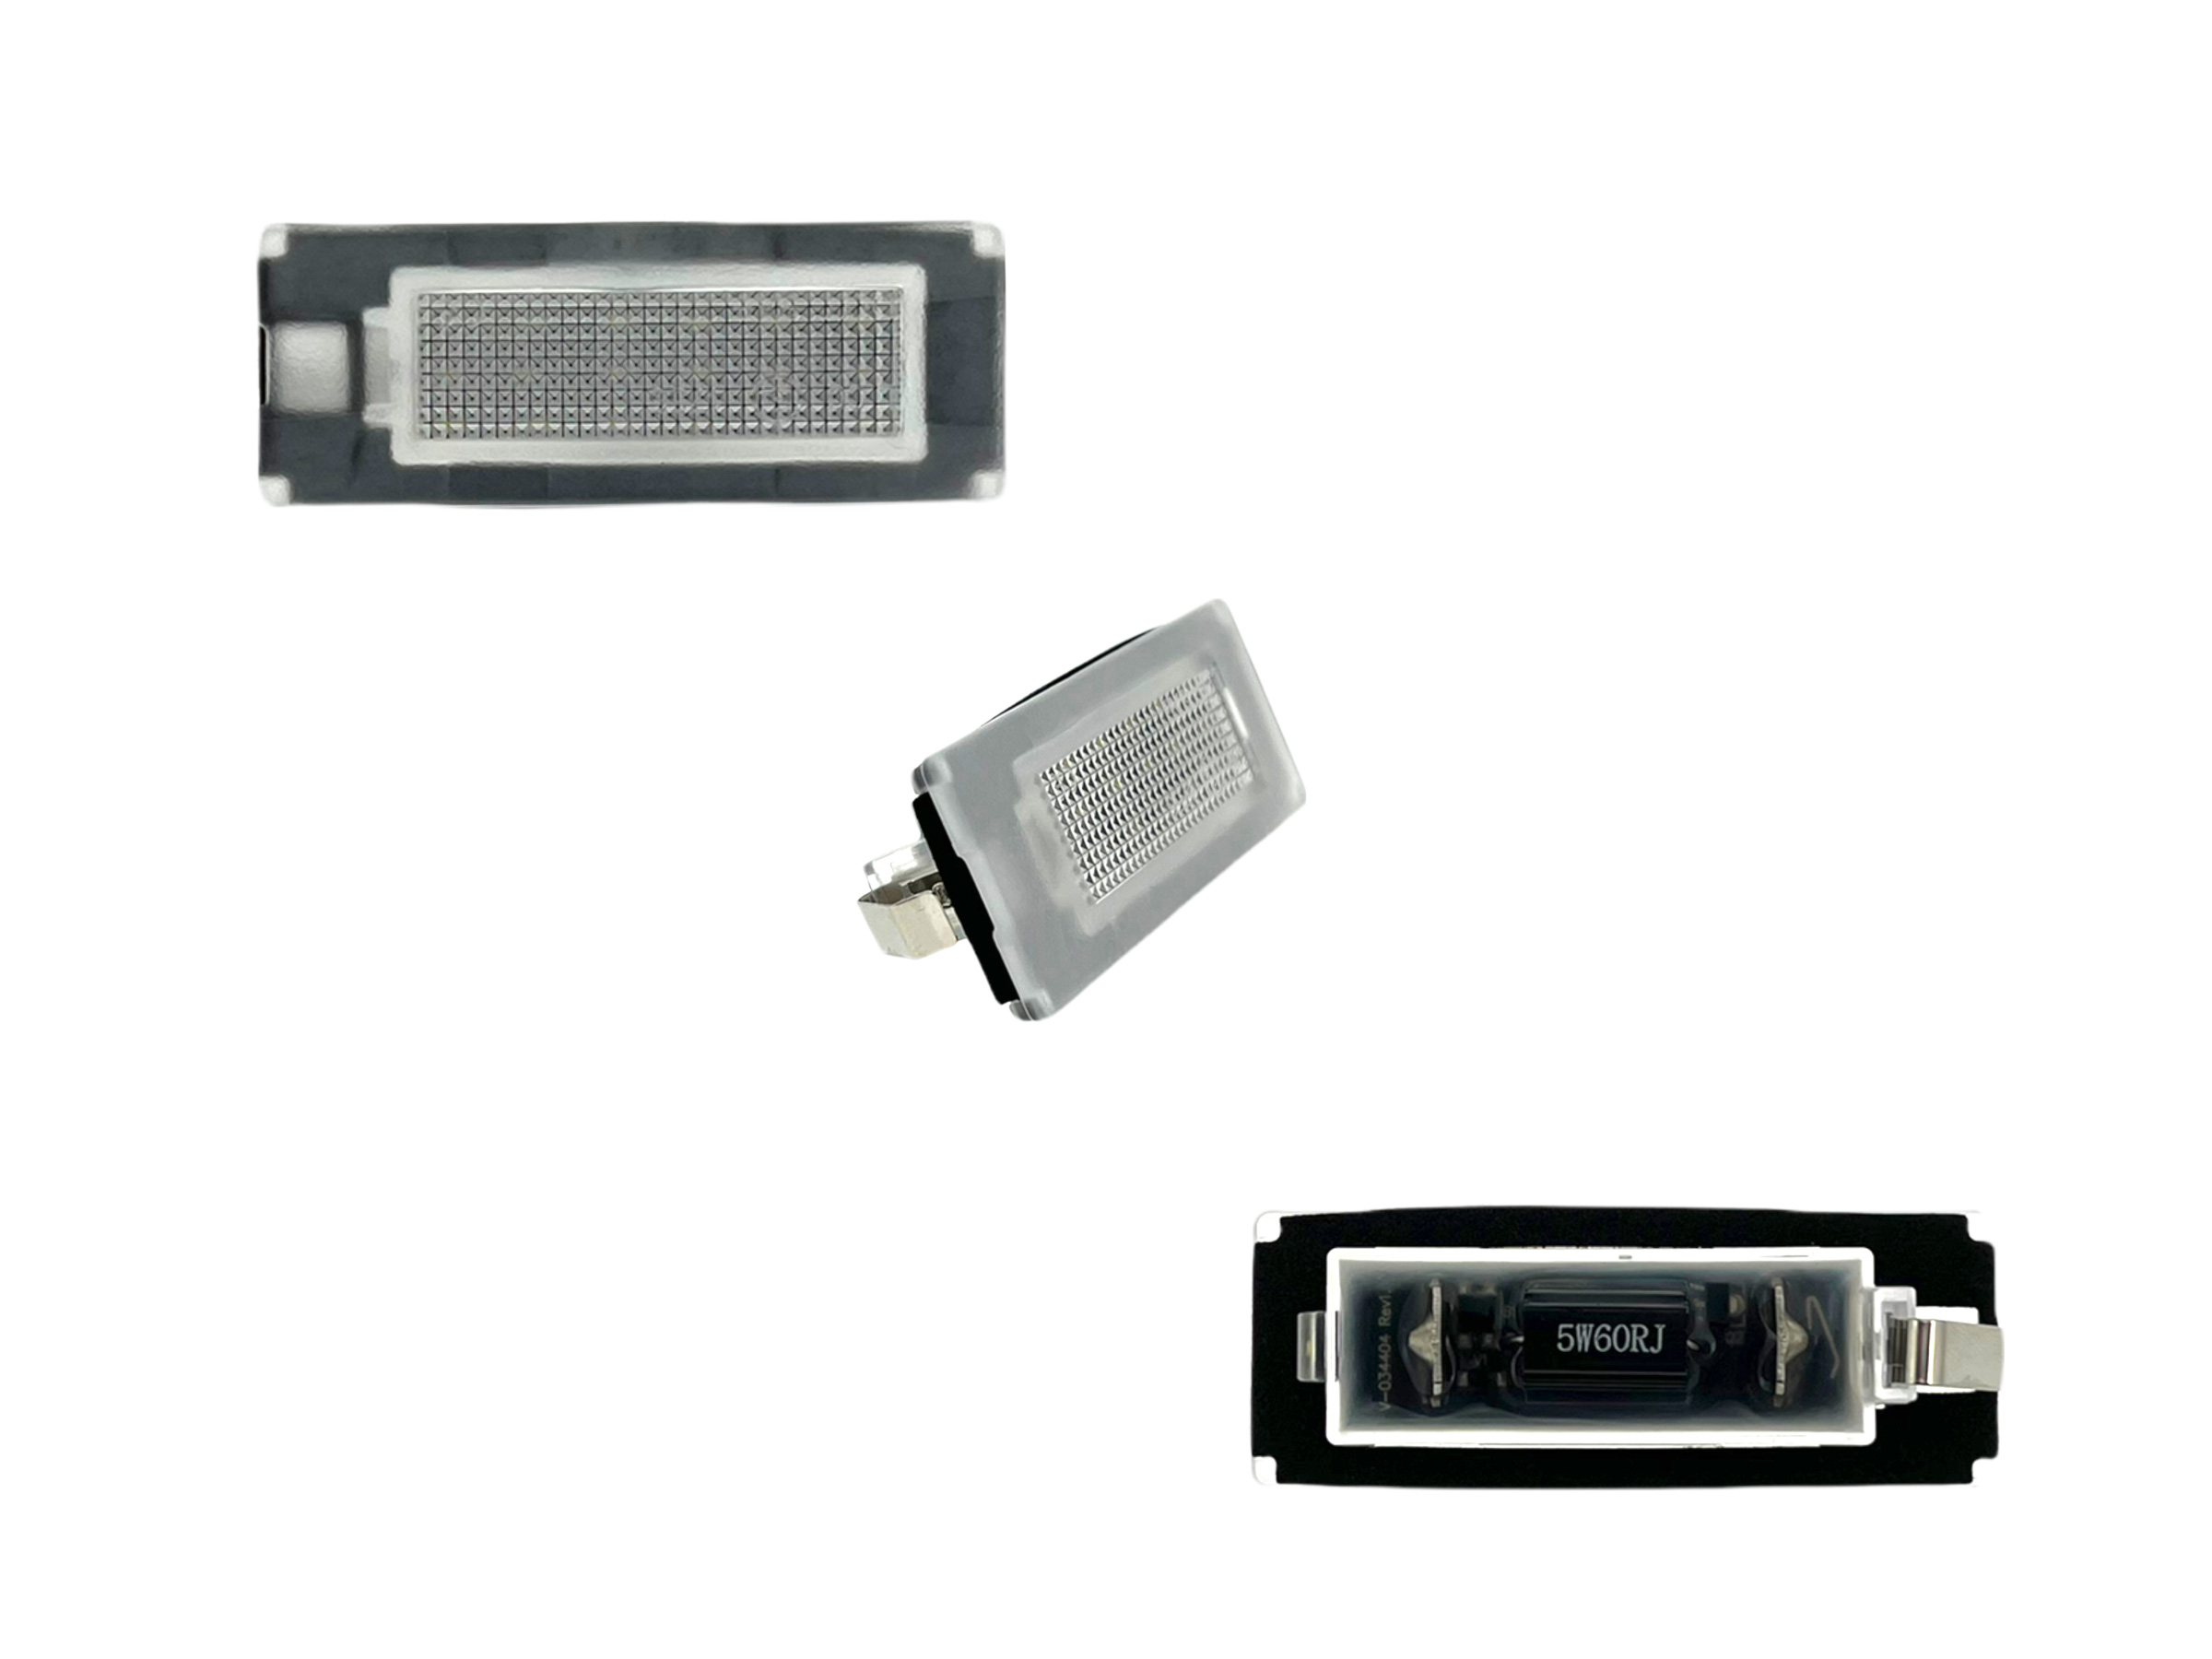 FMW Tuning & Autoteile - LED Kennzeichenbeleuchtung weiß passend